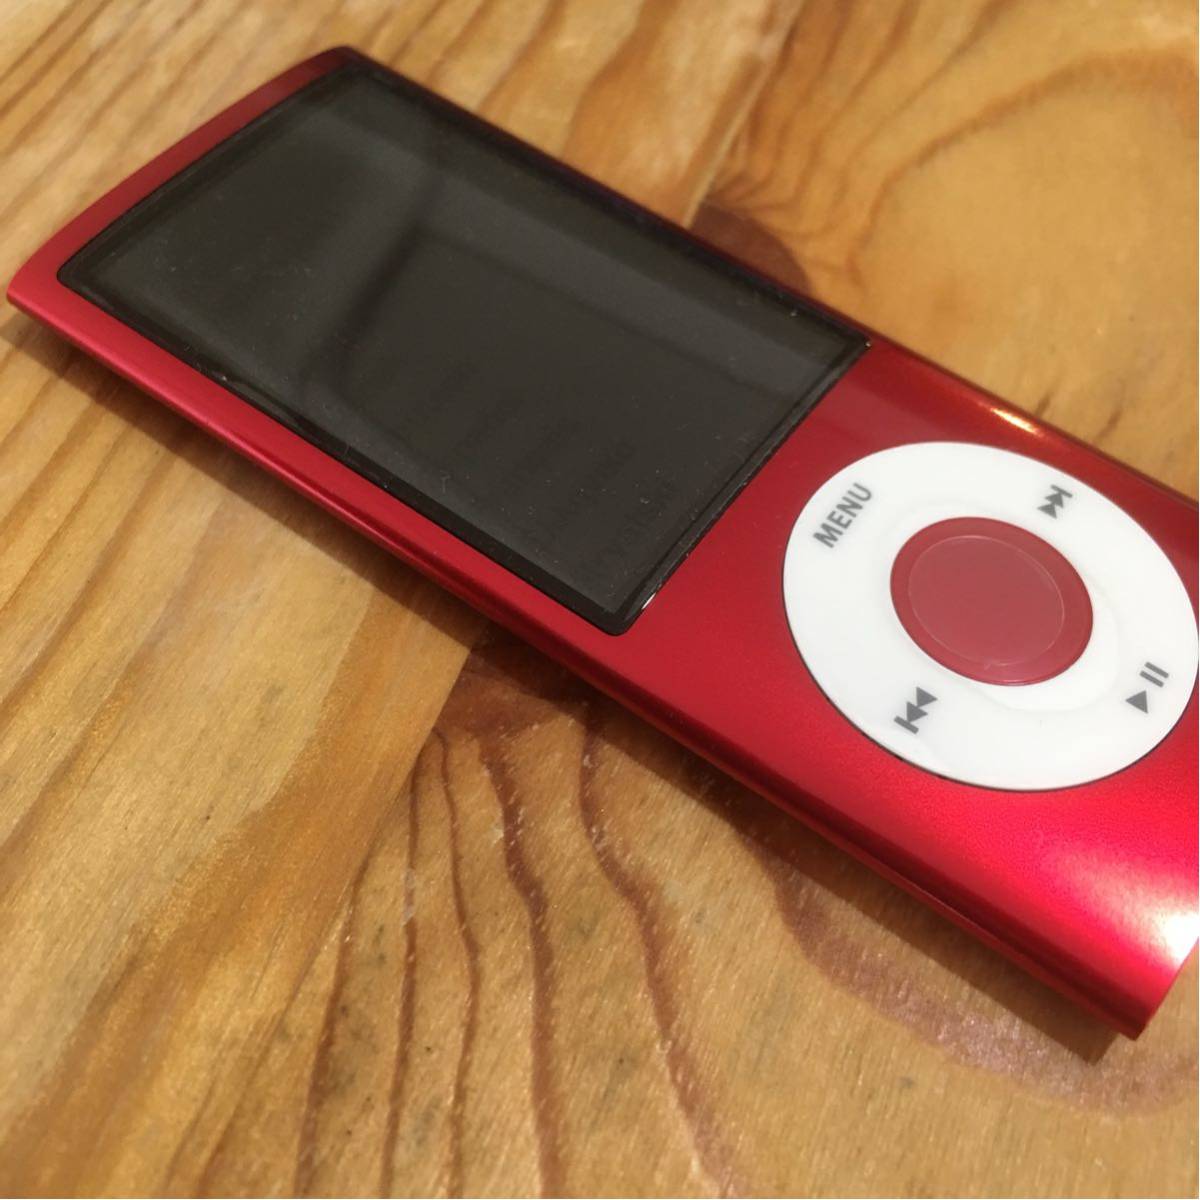 像新文章Apple iPod nano第5代紅色未使用的項目16GB 原文:新品同様 未使用品 Apple iPod nano 第5世代 レッド 16GB